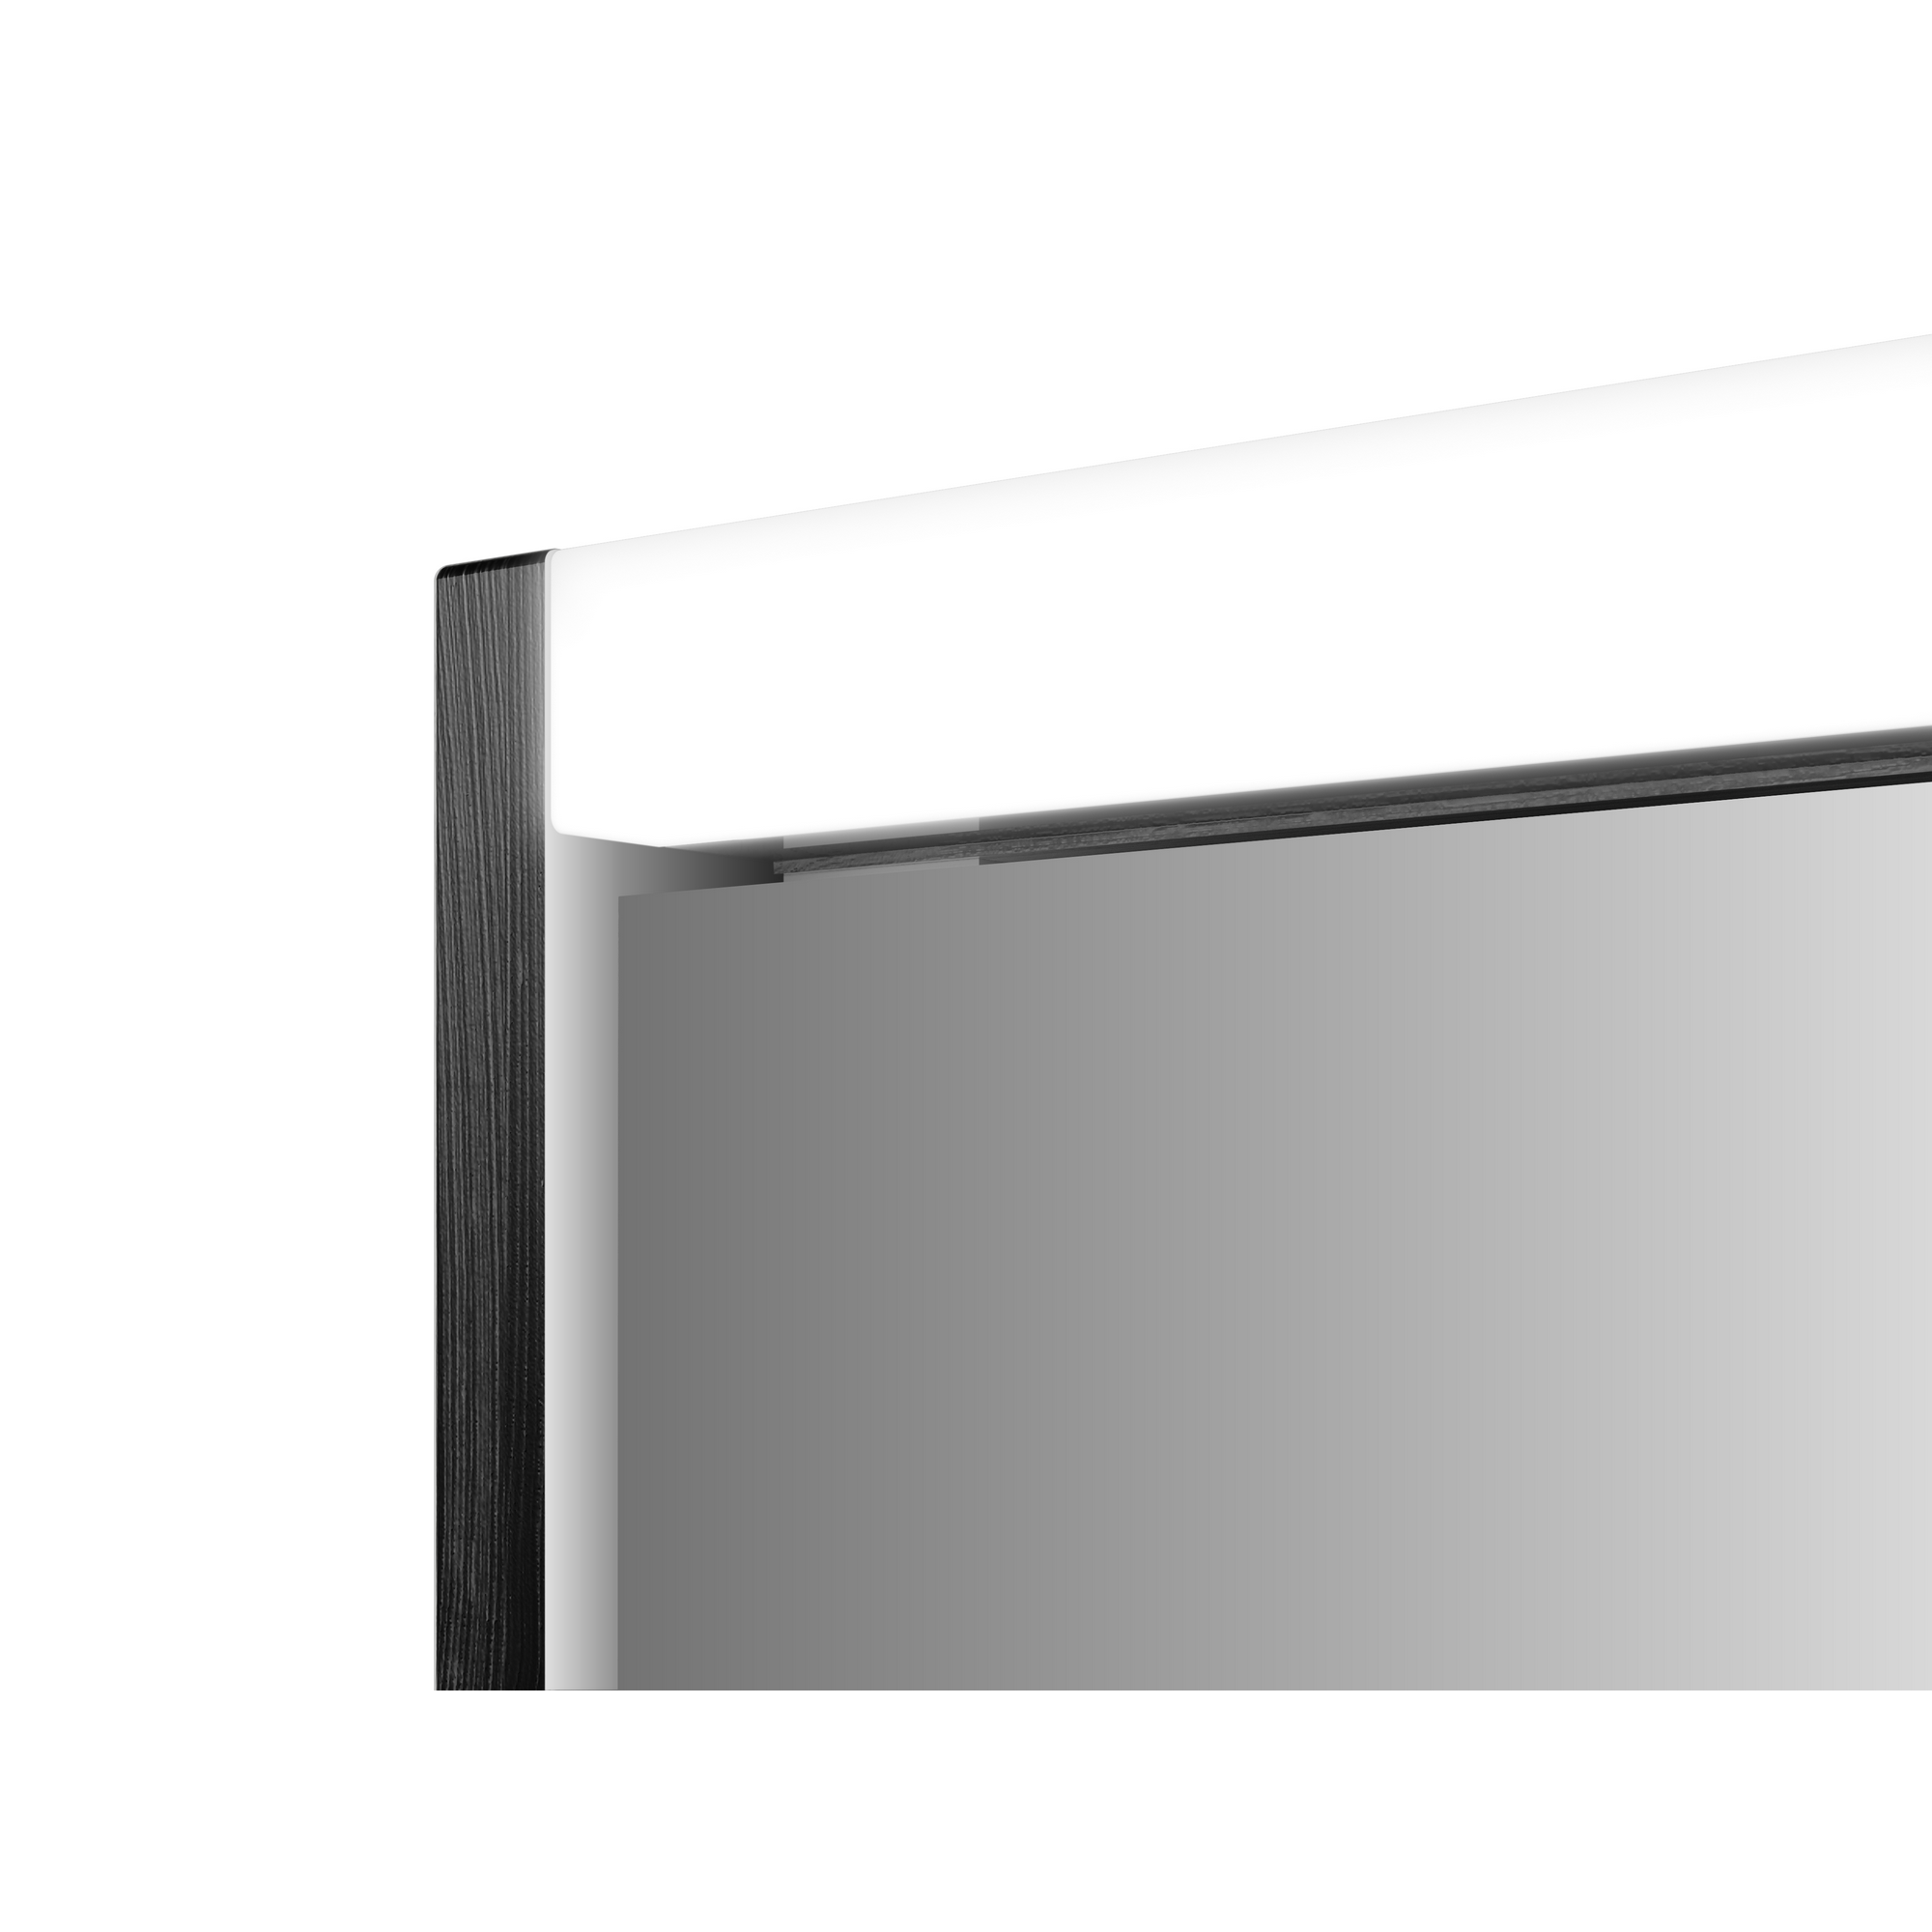 LED-Spiegelschrank 'KHX' anthrazit 120,4 x 74 x 14,2 cm + product picture